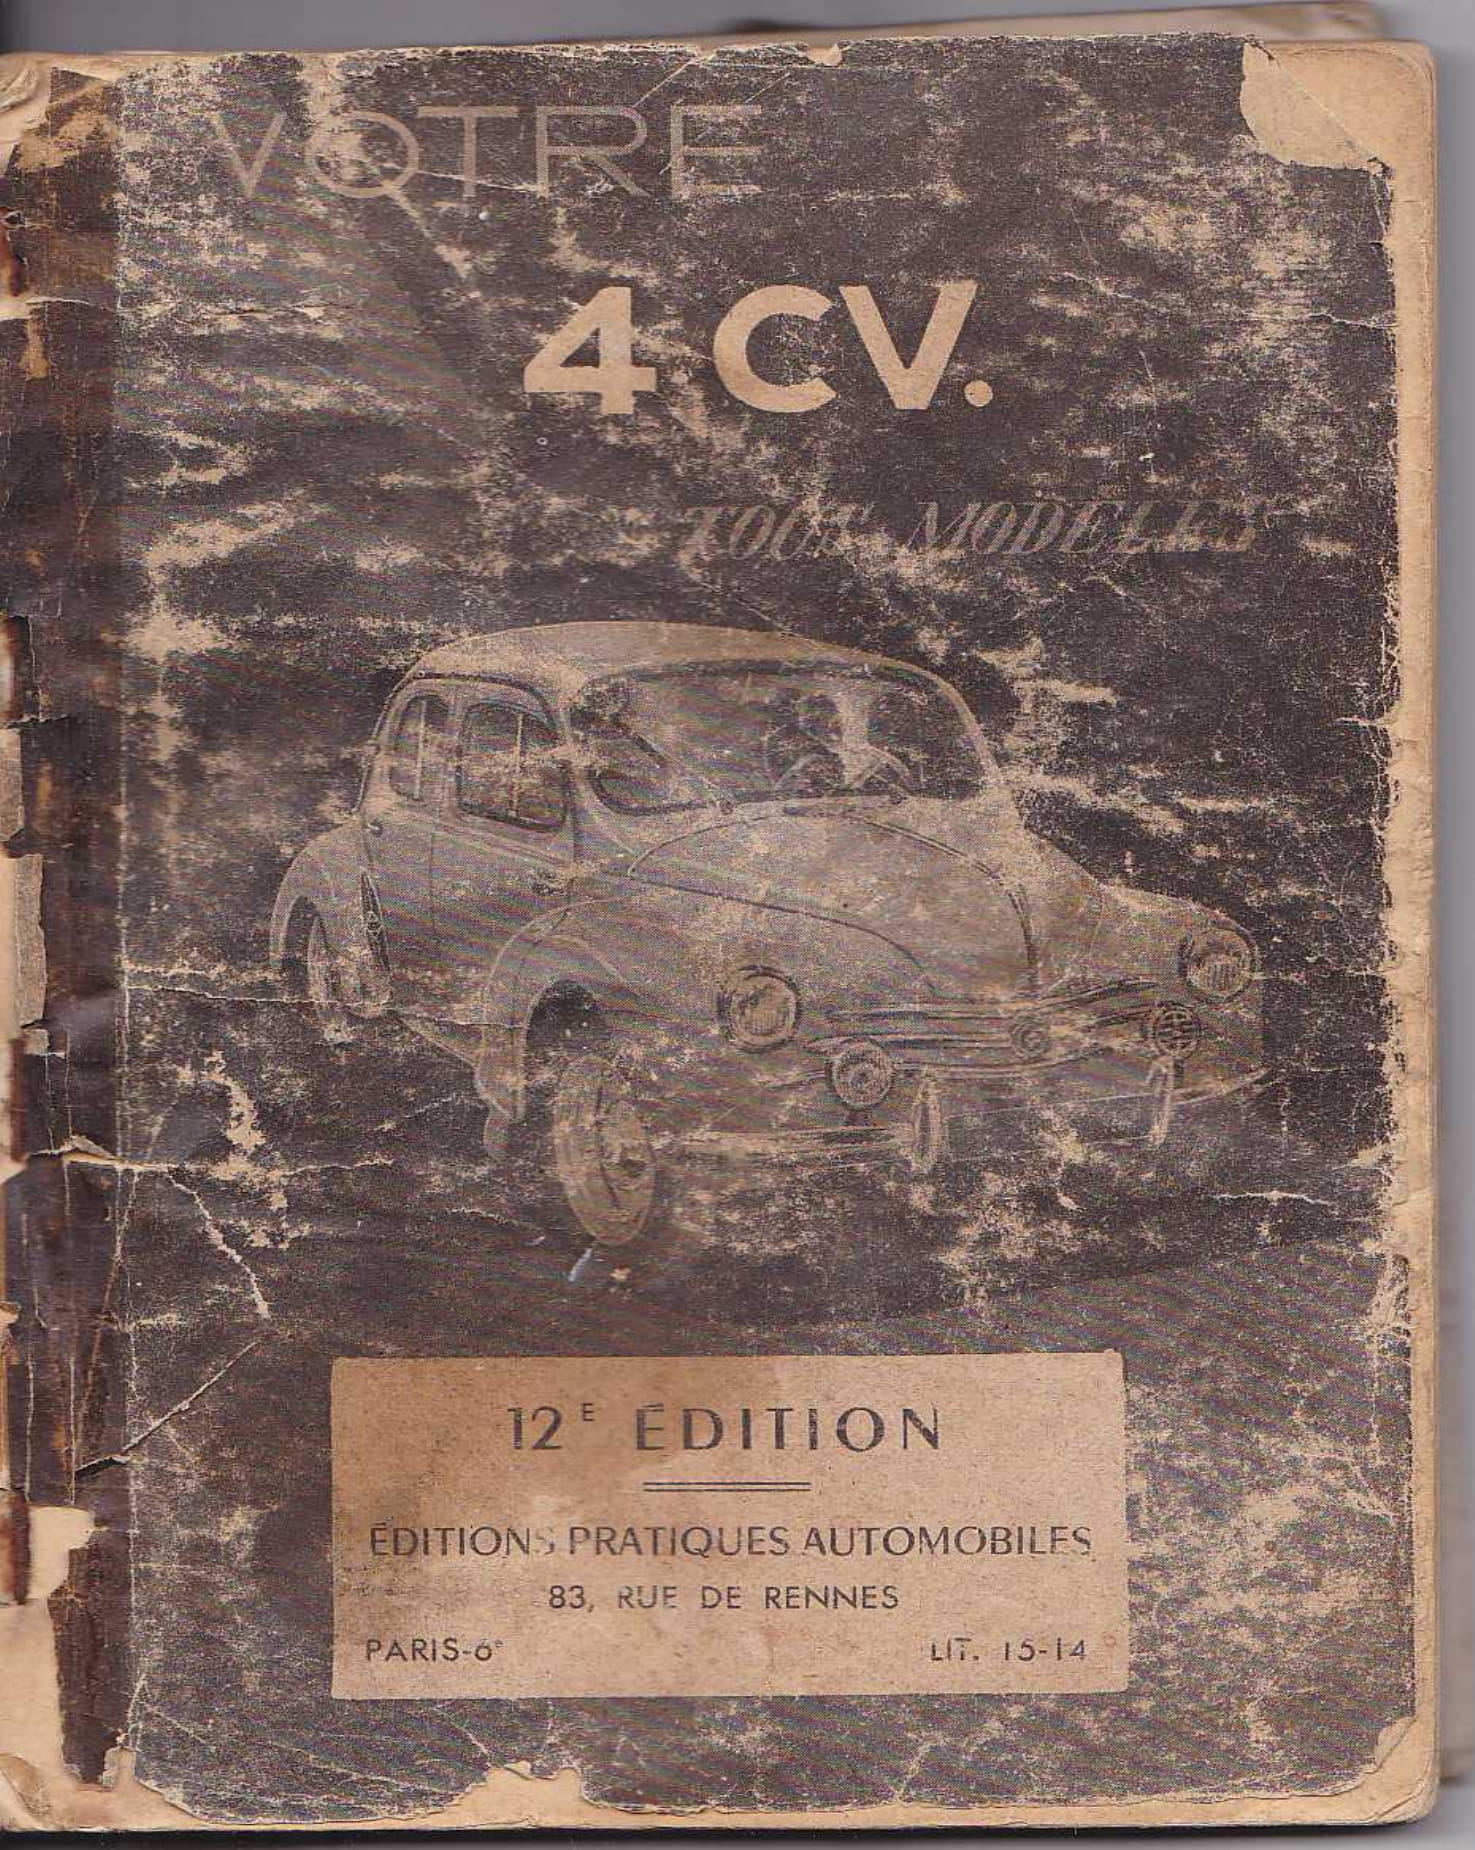 Guide 12ème édition de la Renault 4cv